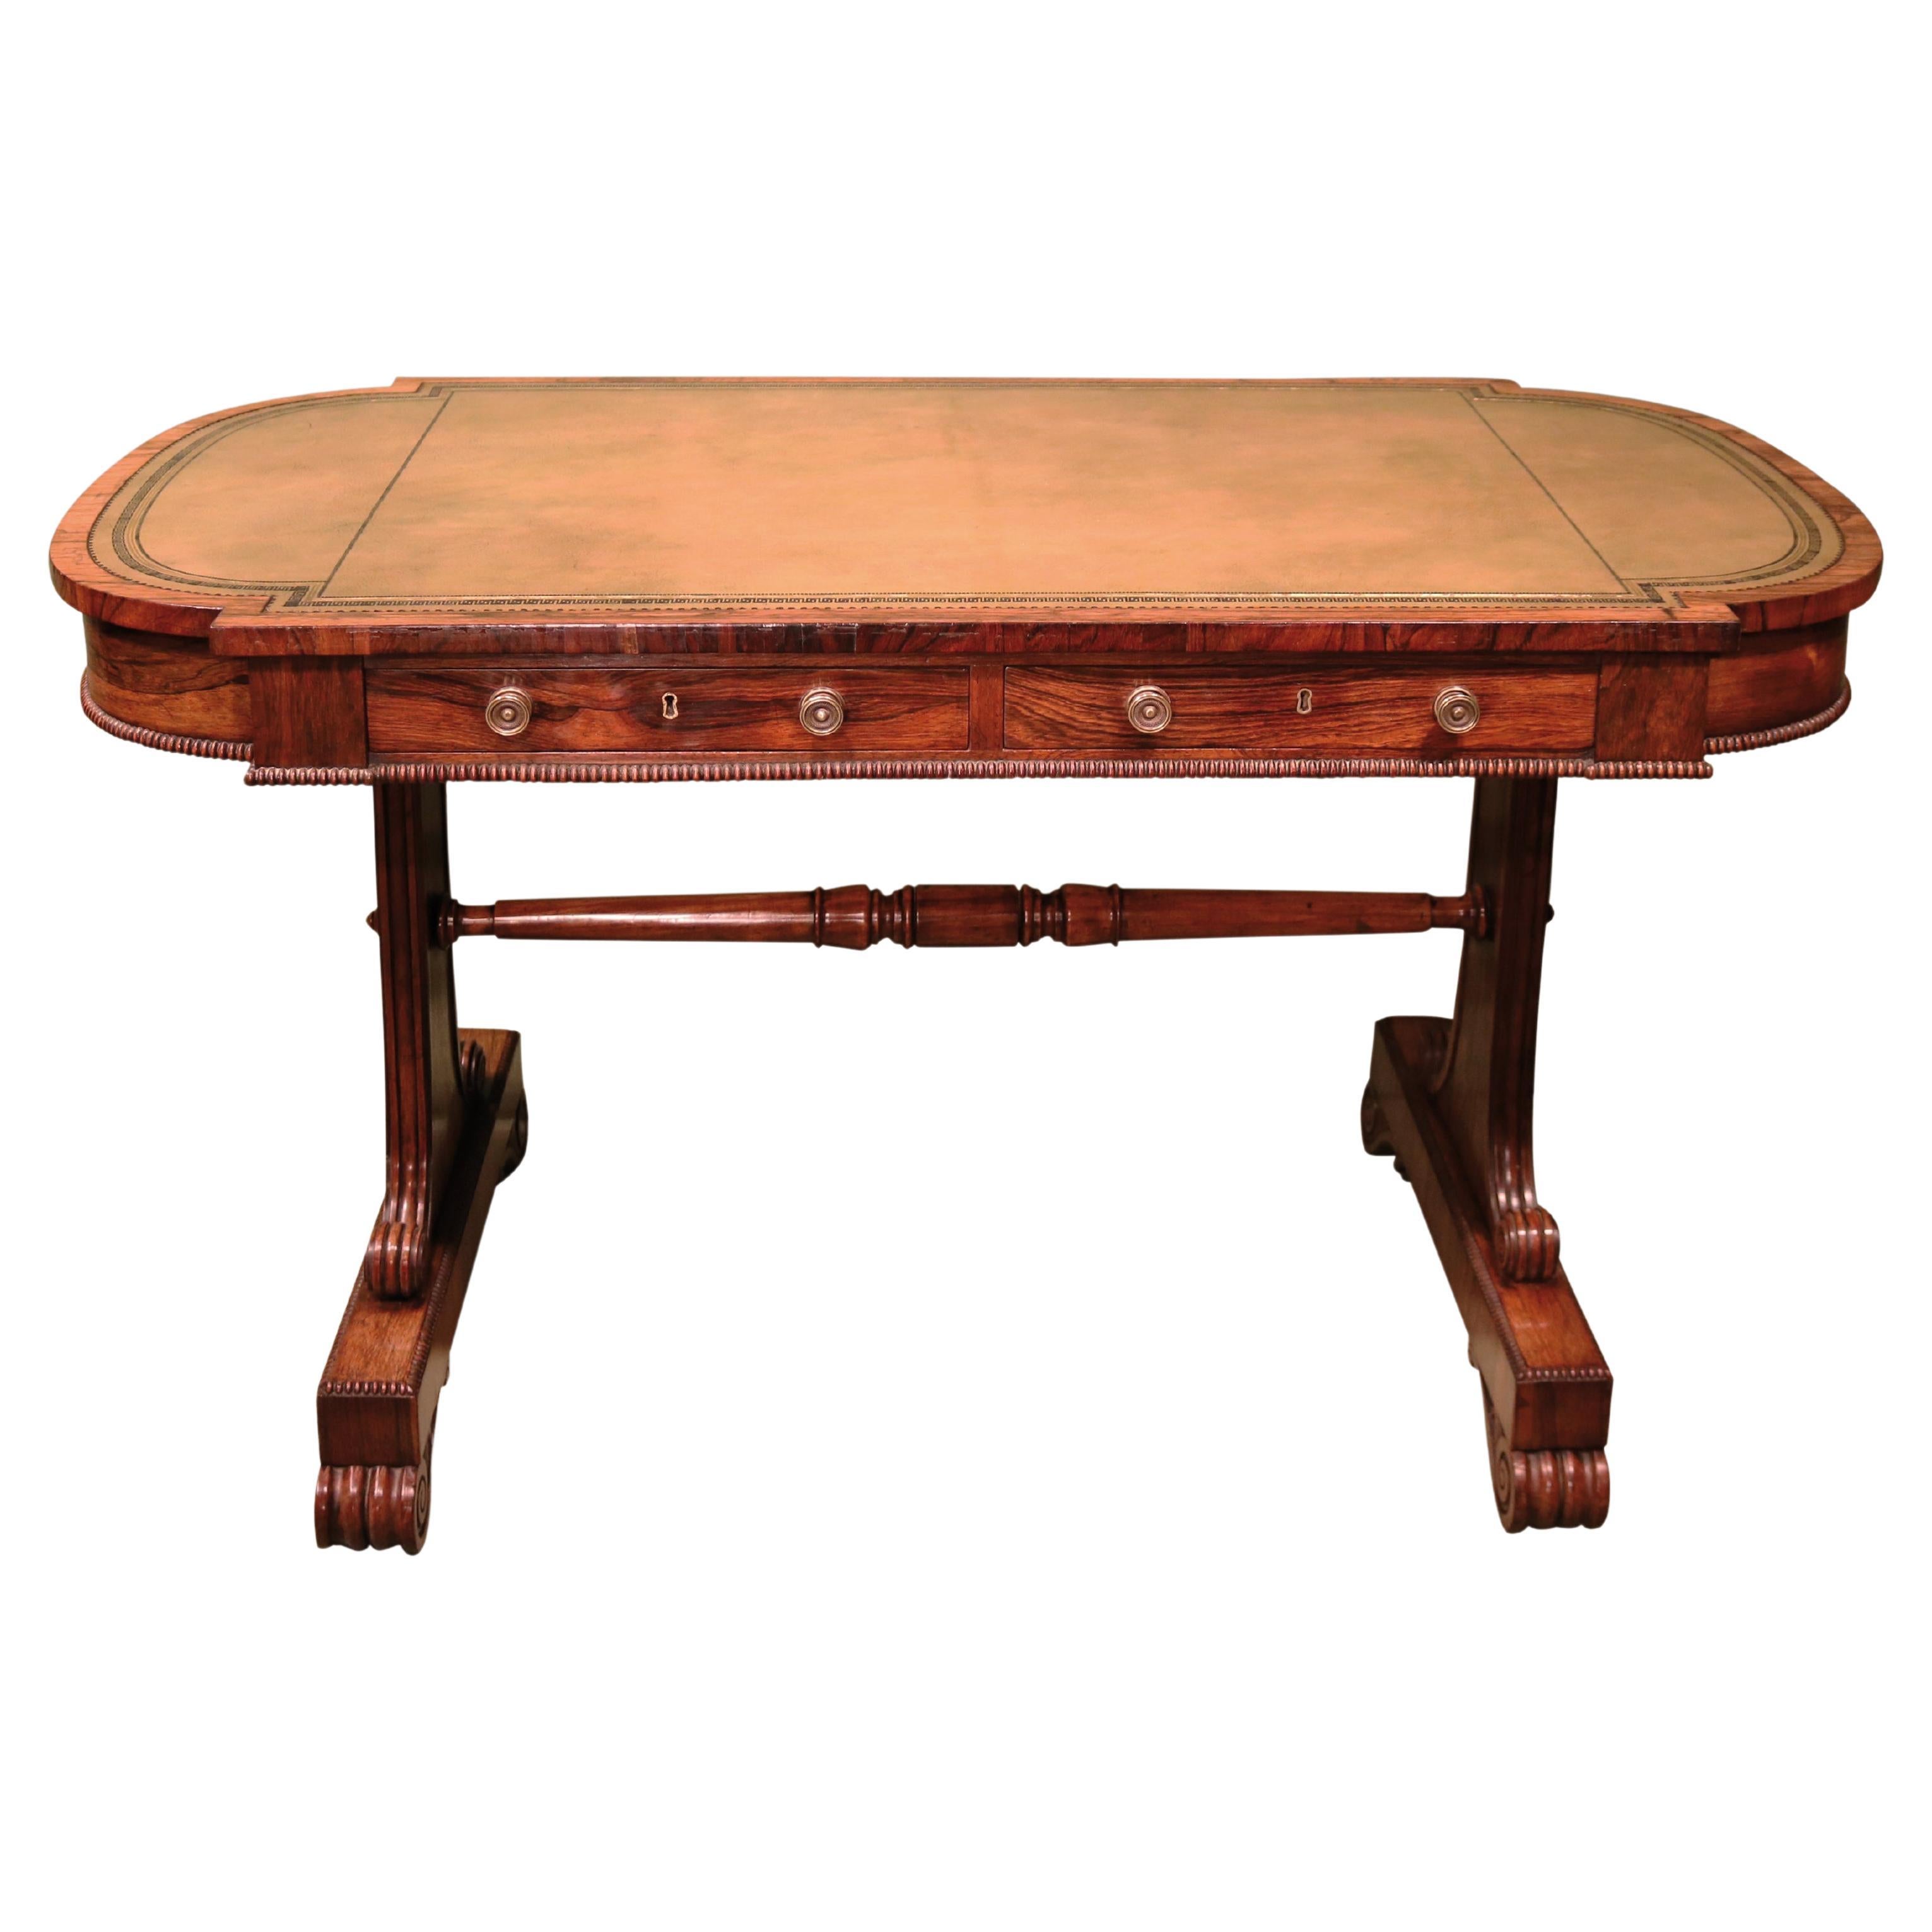 Table à écrire en bois de rose du début du XIXe siècle, période Régence